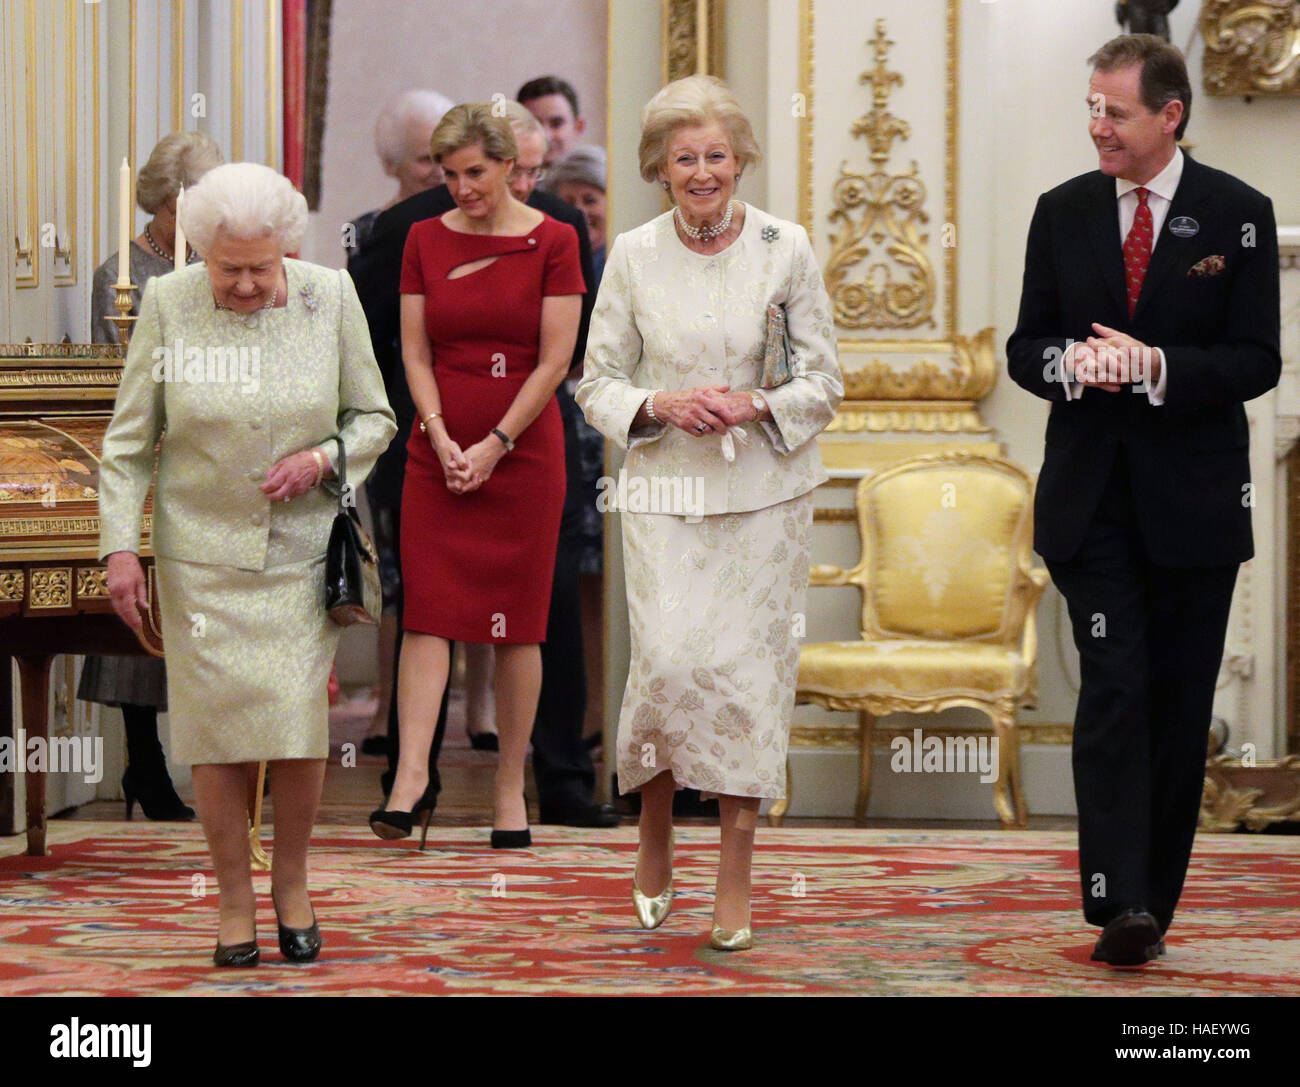 La reine Elizabeth II (à gauche), la Princesse Alexandra et la comtesse de Wessex (derrière), au cours d'une réception pour célébrer le mécénats de la princesse, en l'année de ses 80 ans, à Buckingham Palace, Londres. Banque D'Images